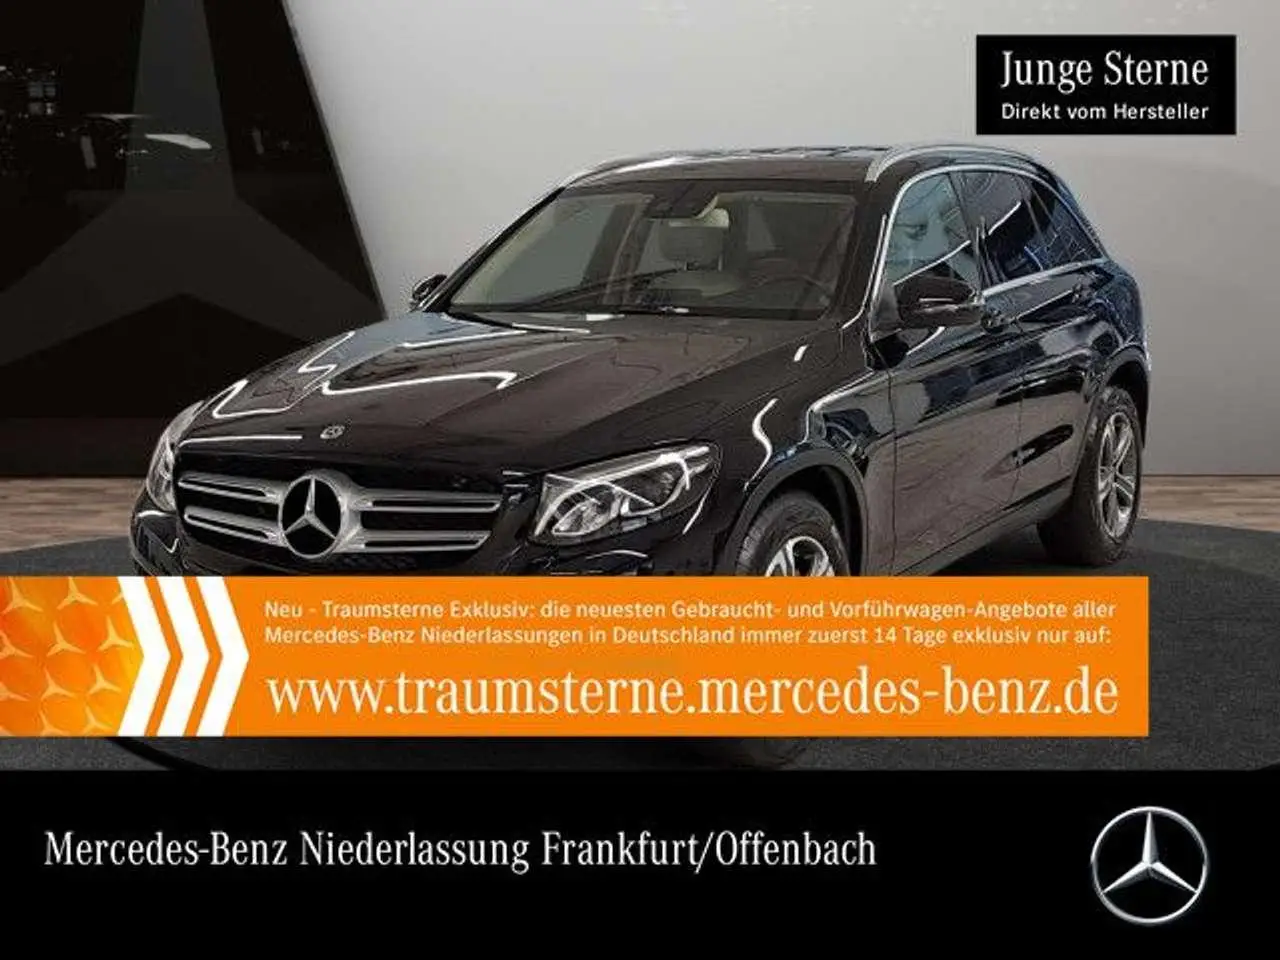 Photo 1 : Mercedes-benz Classe Glc 2019 Essence